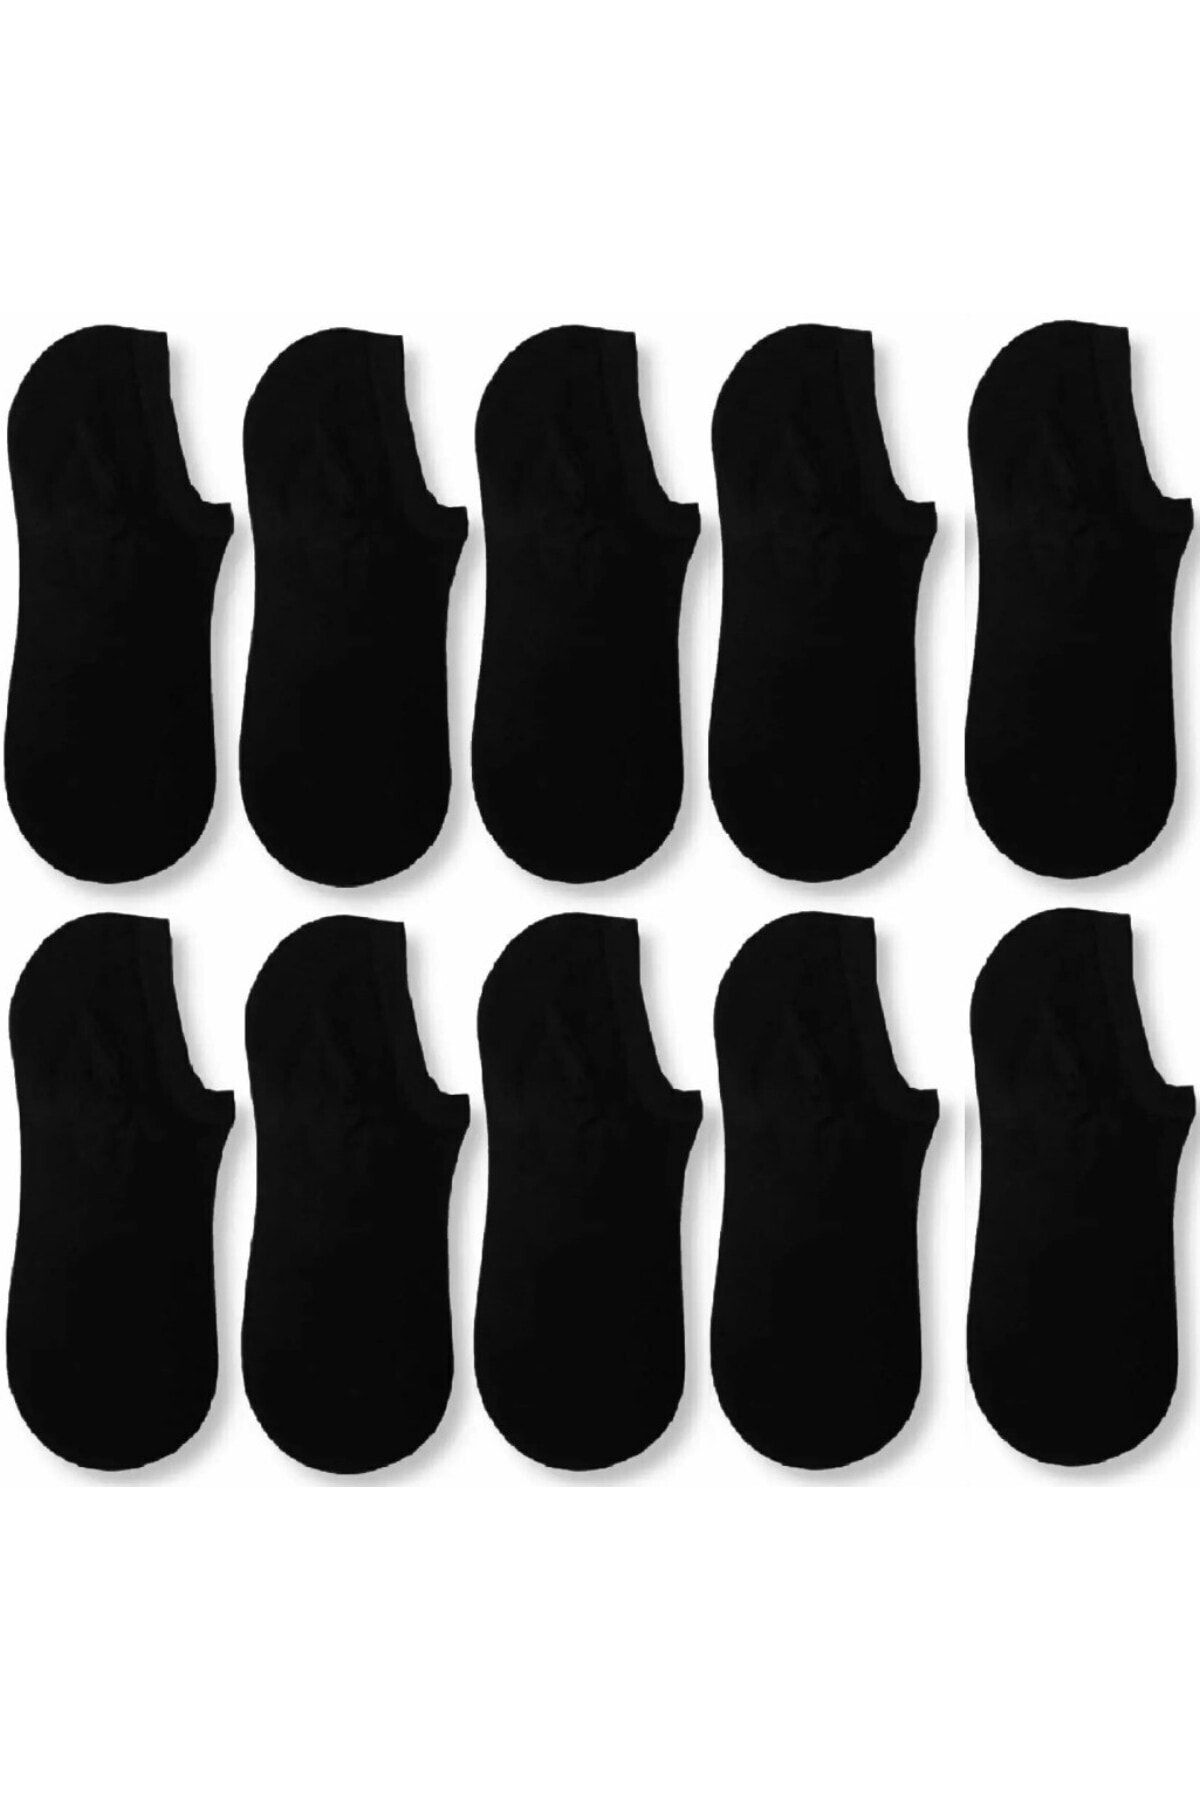 socksbox 10 Çift Kadın Siyah Bambu Görünmez (Sneaker) Spor Ayakkabı Çorabı.